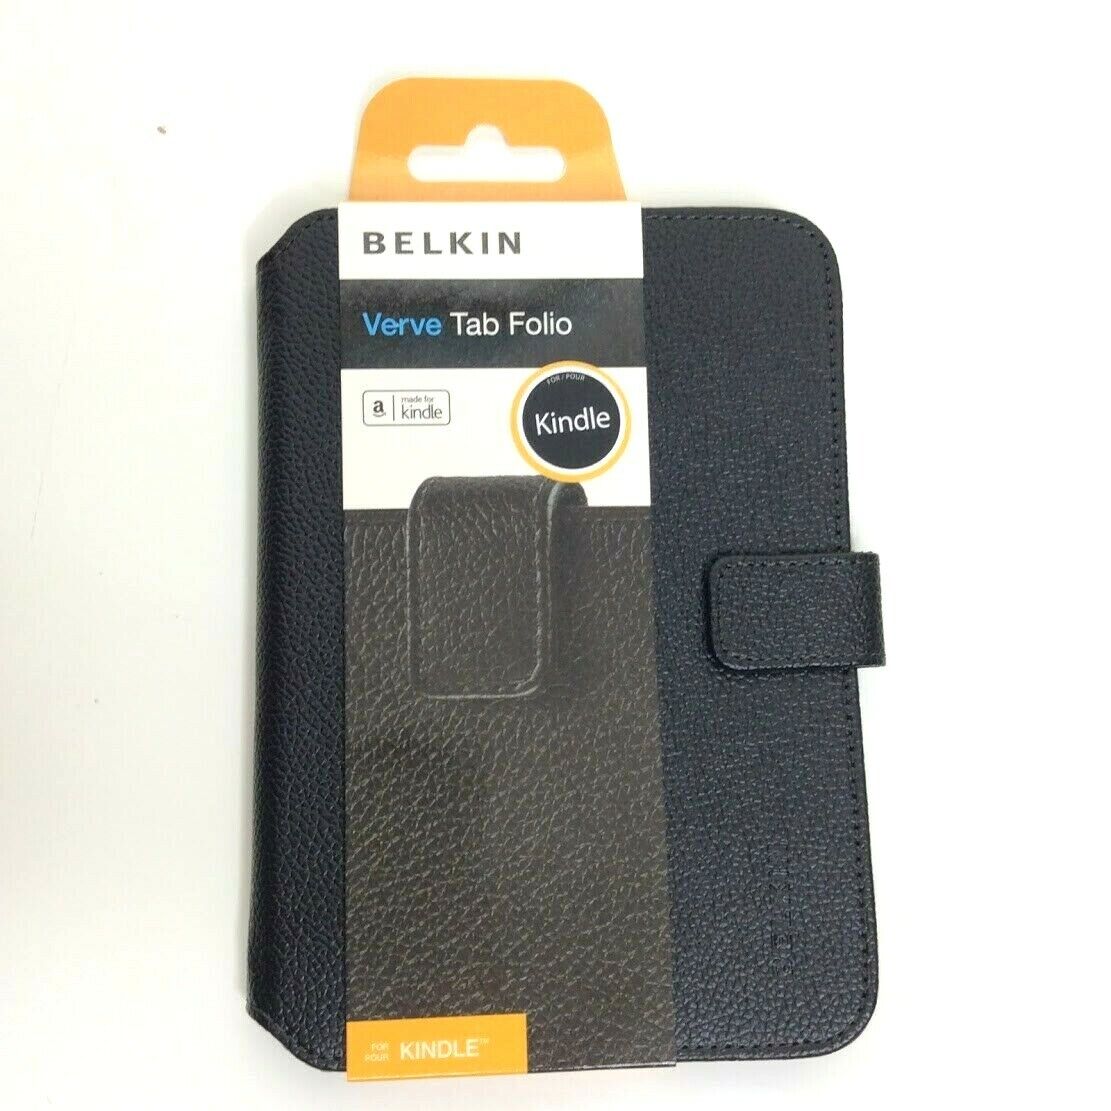 Belkin Verve Tab Folio Kindle Paper Case Cover Magnetic Black Violet 6